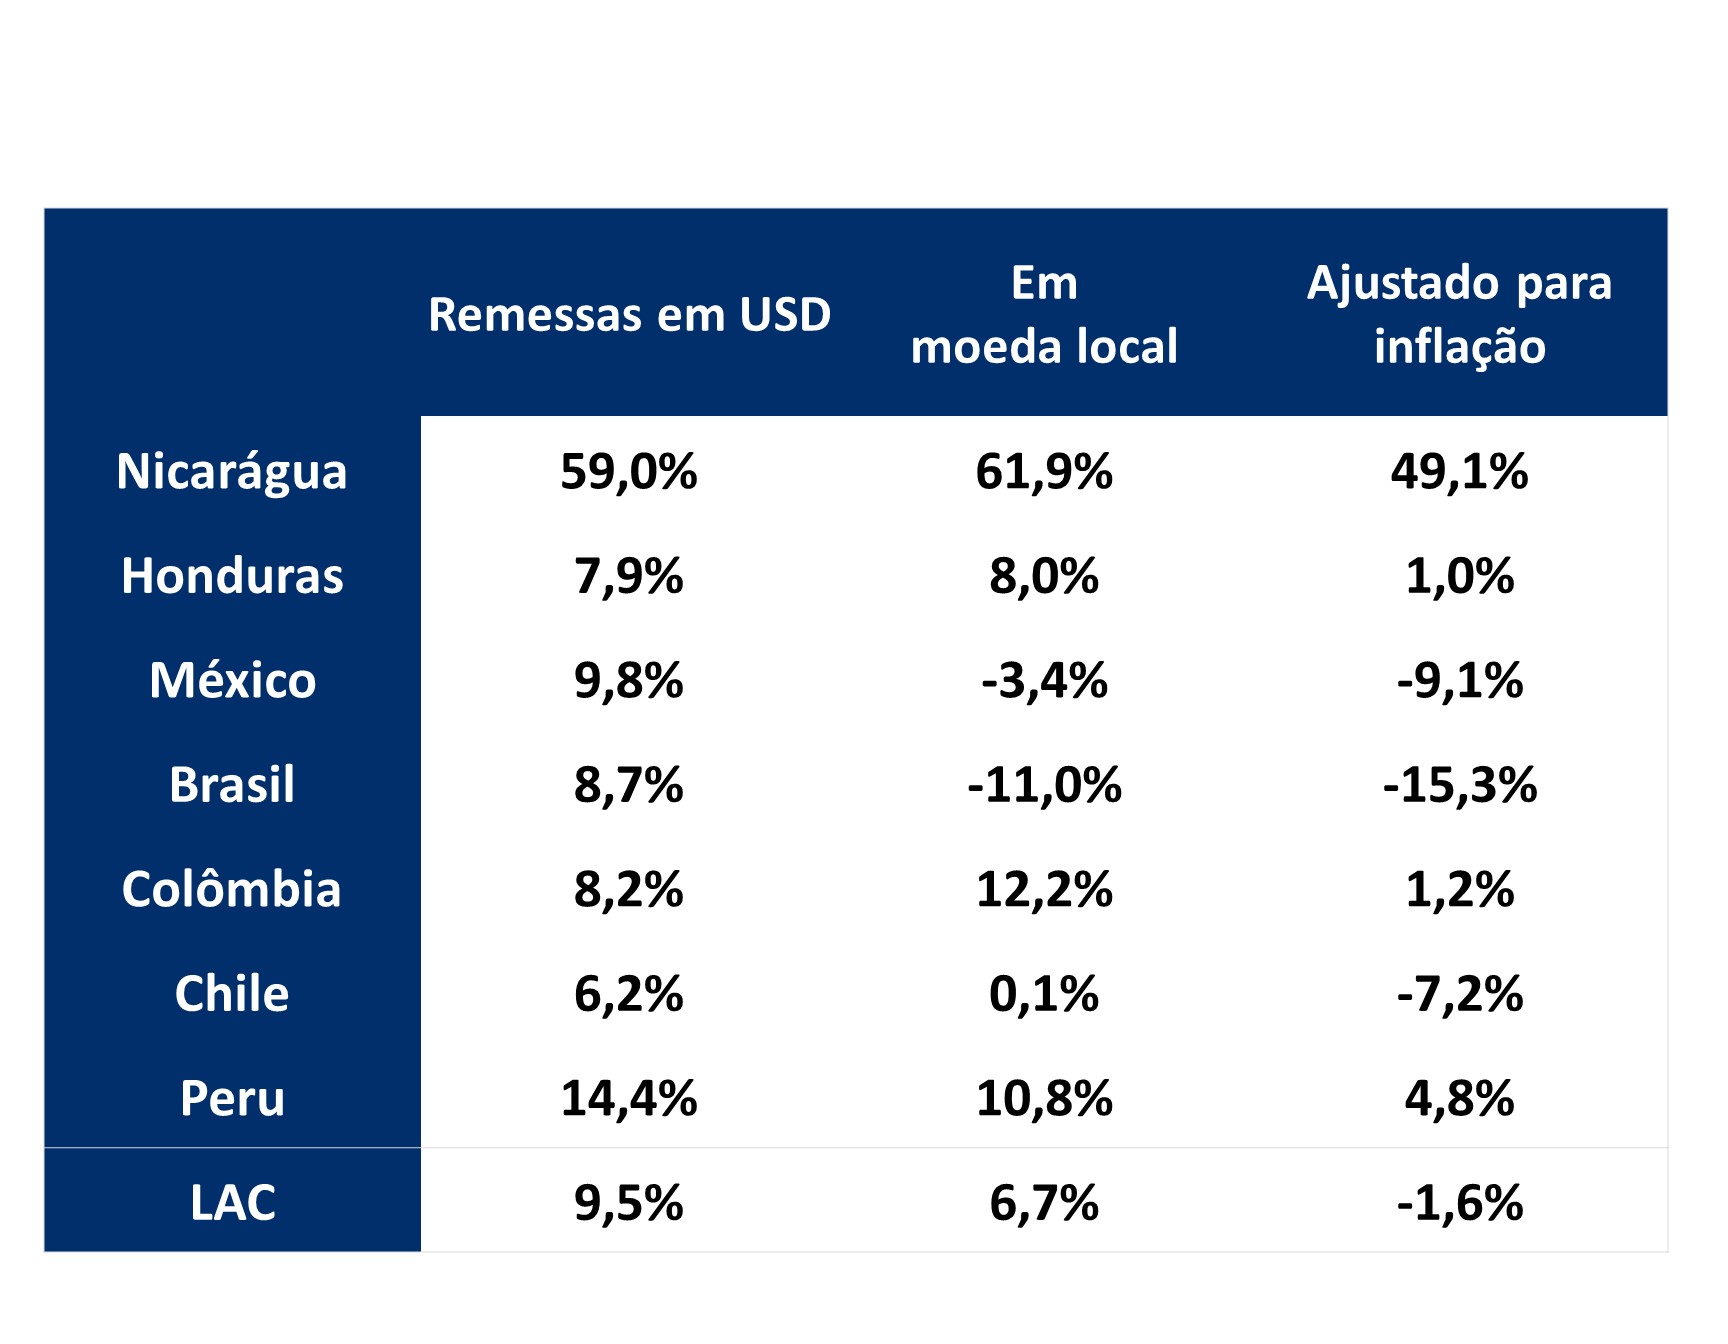 Esta tabela mostra as taxas de crescimento de 2022 a 2023 das remessas em USD, moeda local e ajustadas para inflação, em Nicarágua, Honduras, México, Brasil, Colômbia, Chile, Peru e América Latina e Caribe.